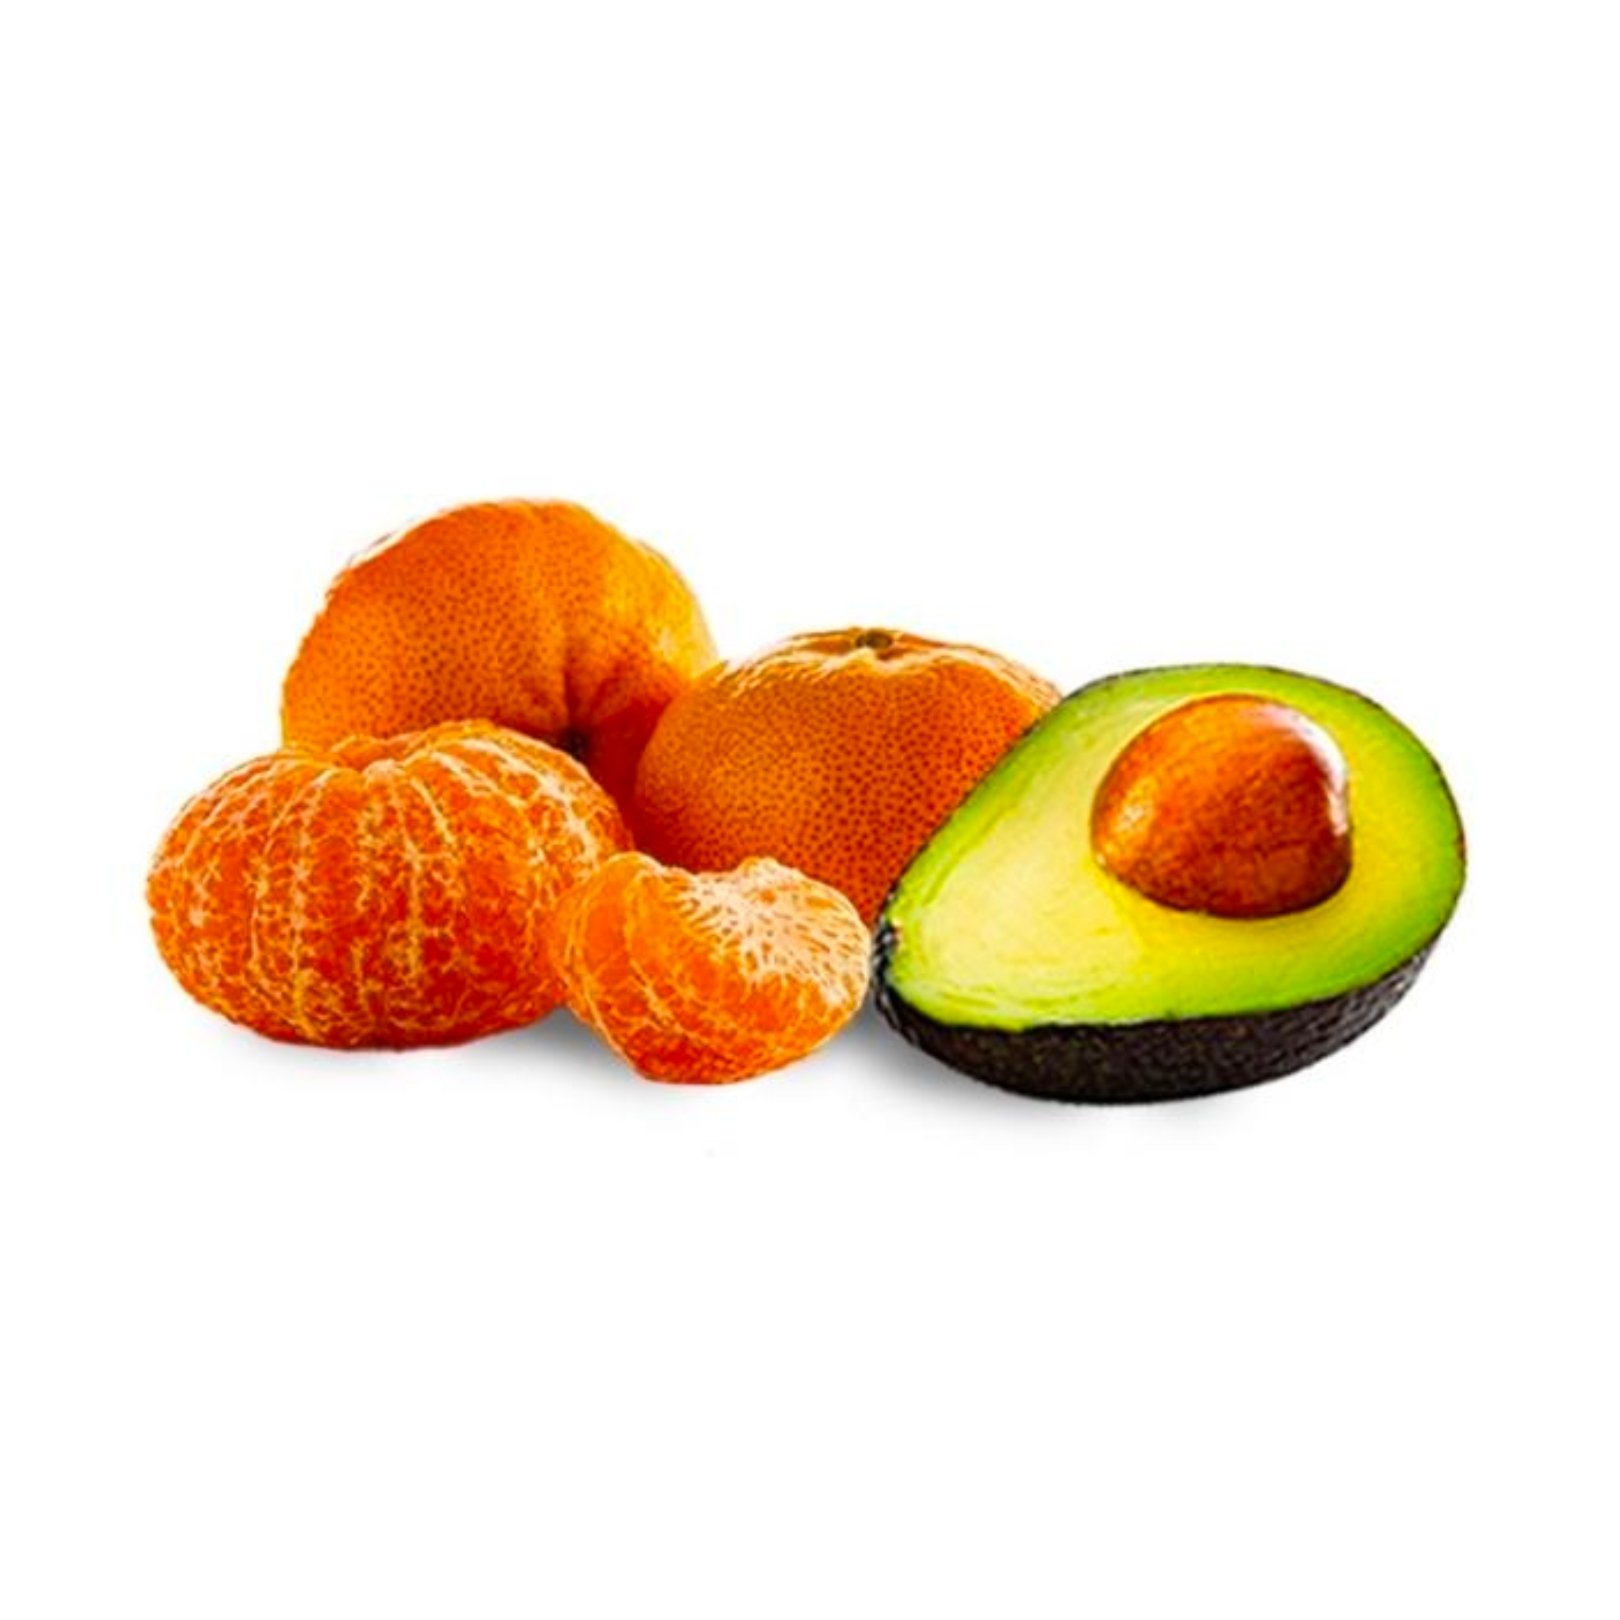 Buy Mandarin Avocado Online NZ